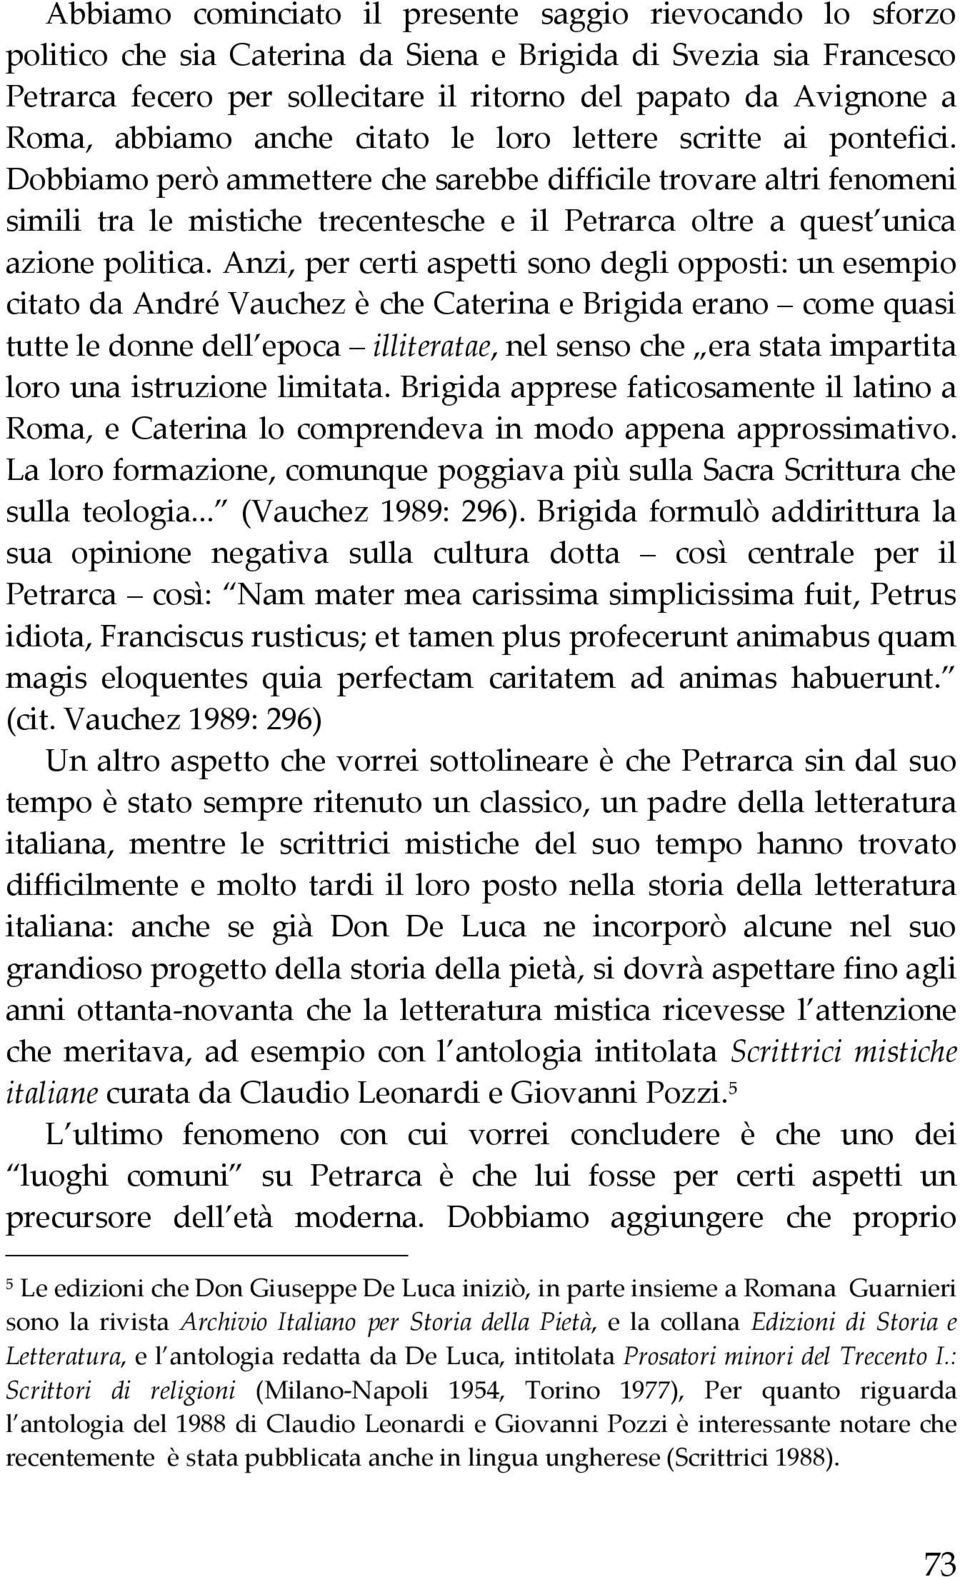 Dobbiamo però ammettere che sarebbe difficile trovare altri fenomeni simili tra le mistiche trecentesche e il Petrarca oltre a quest unica azione politica.